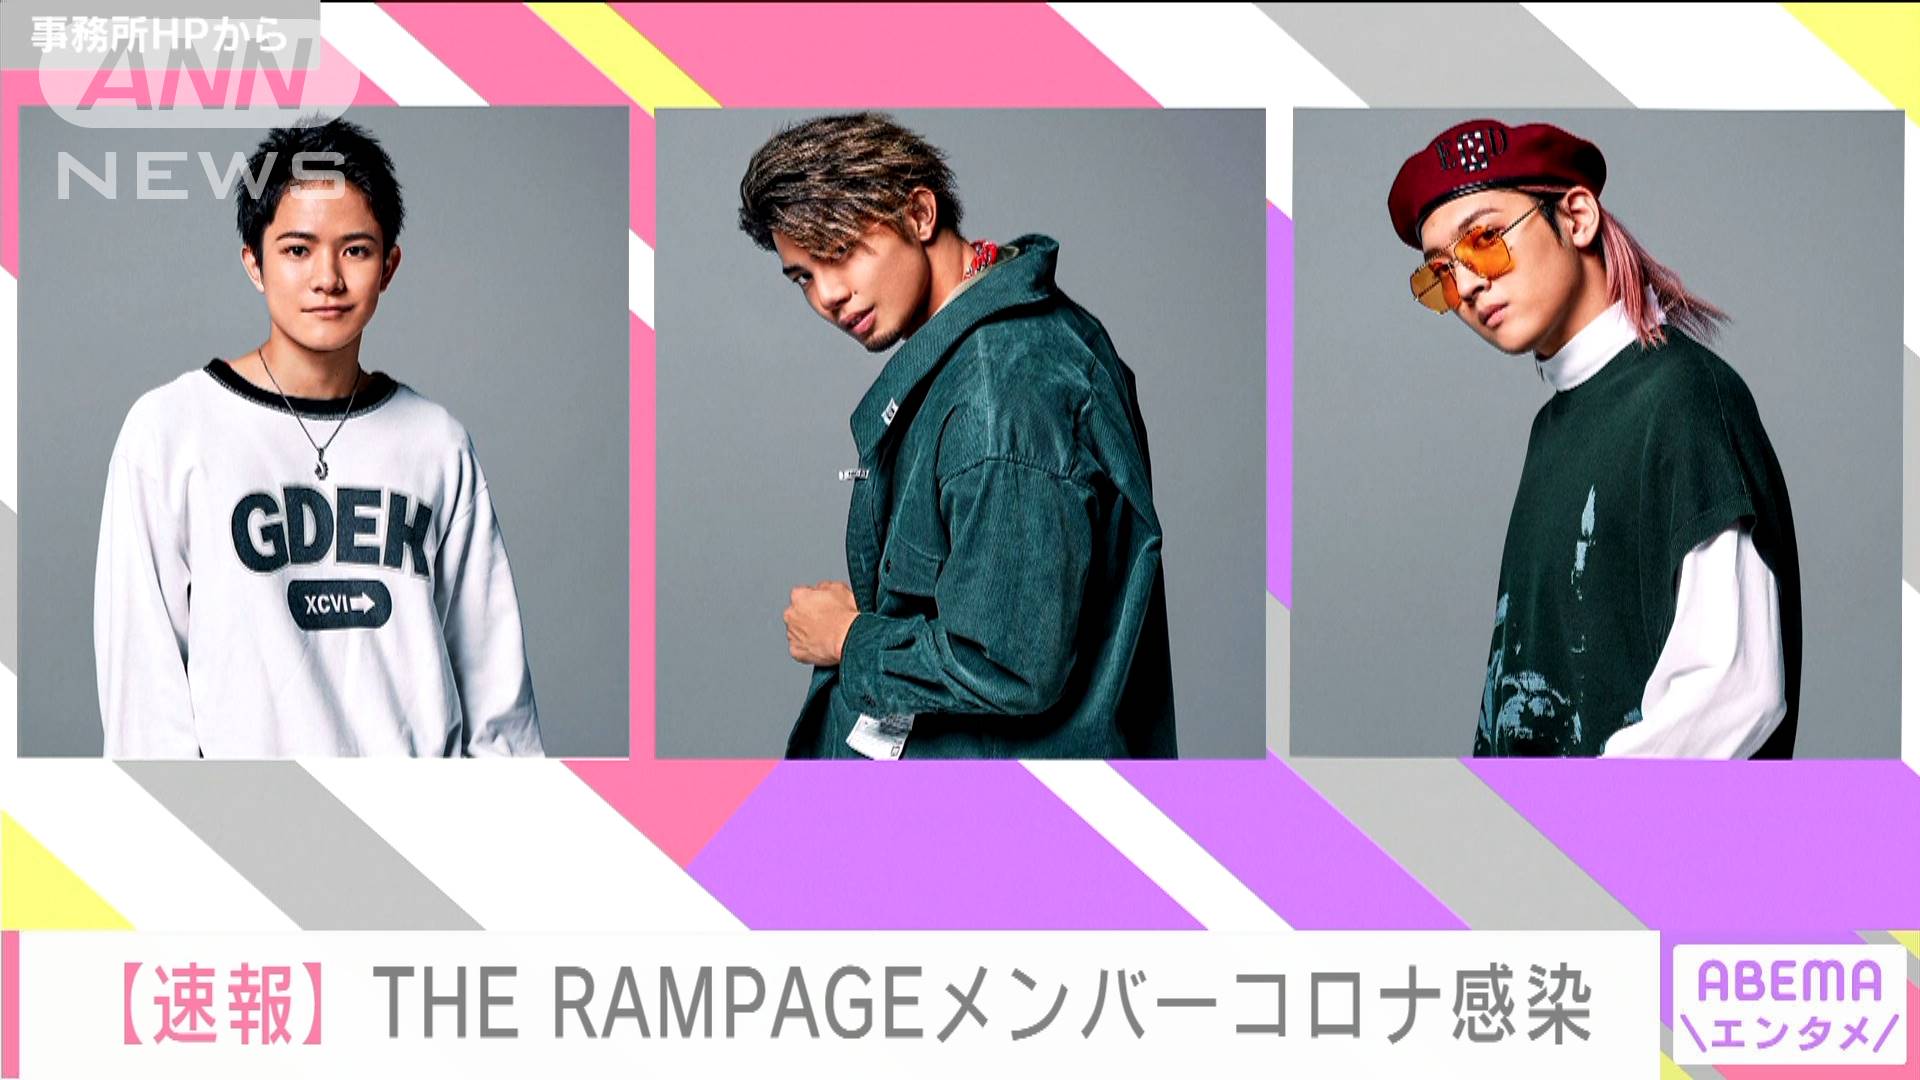 The Rampageのメンバー3人が感染 公式サイトで発表 テレ朝news テレビ朝日のニュースサイト